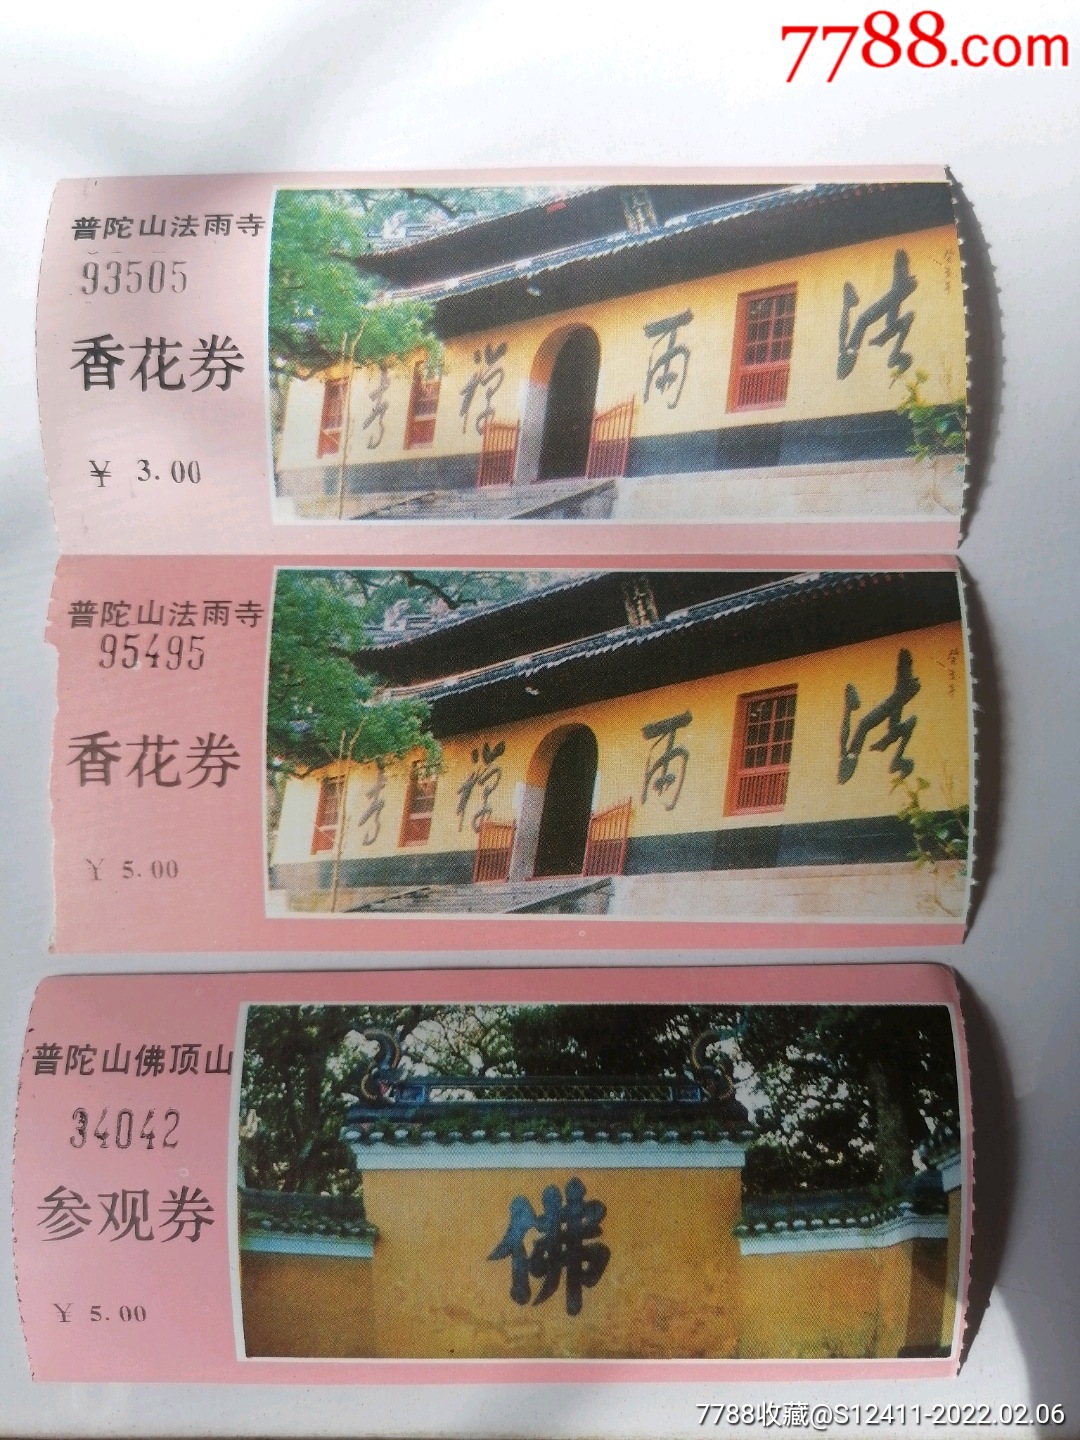 二佛寺门票图片